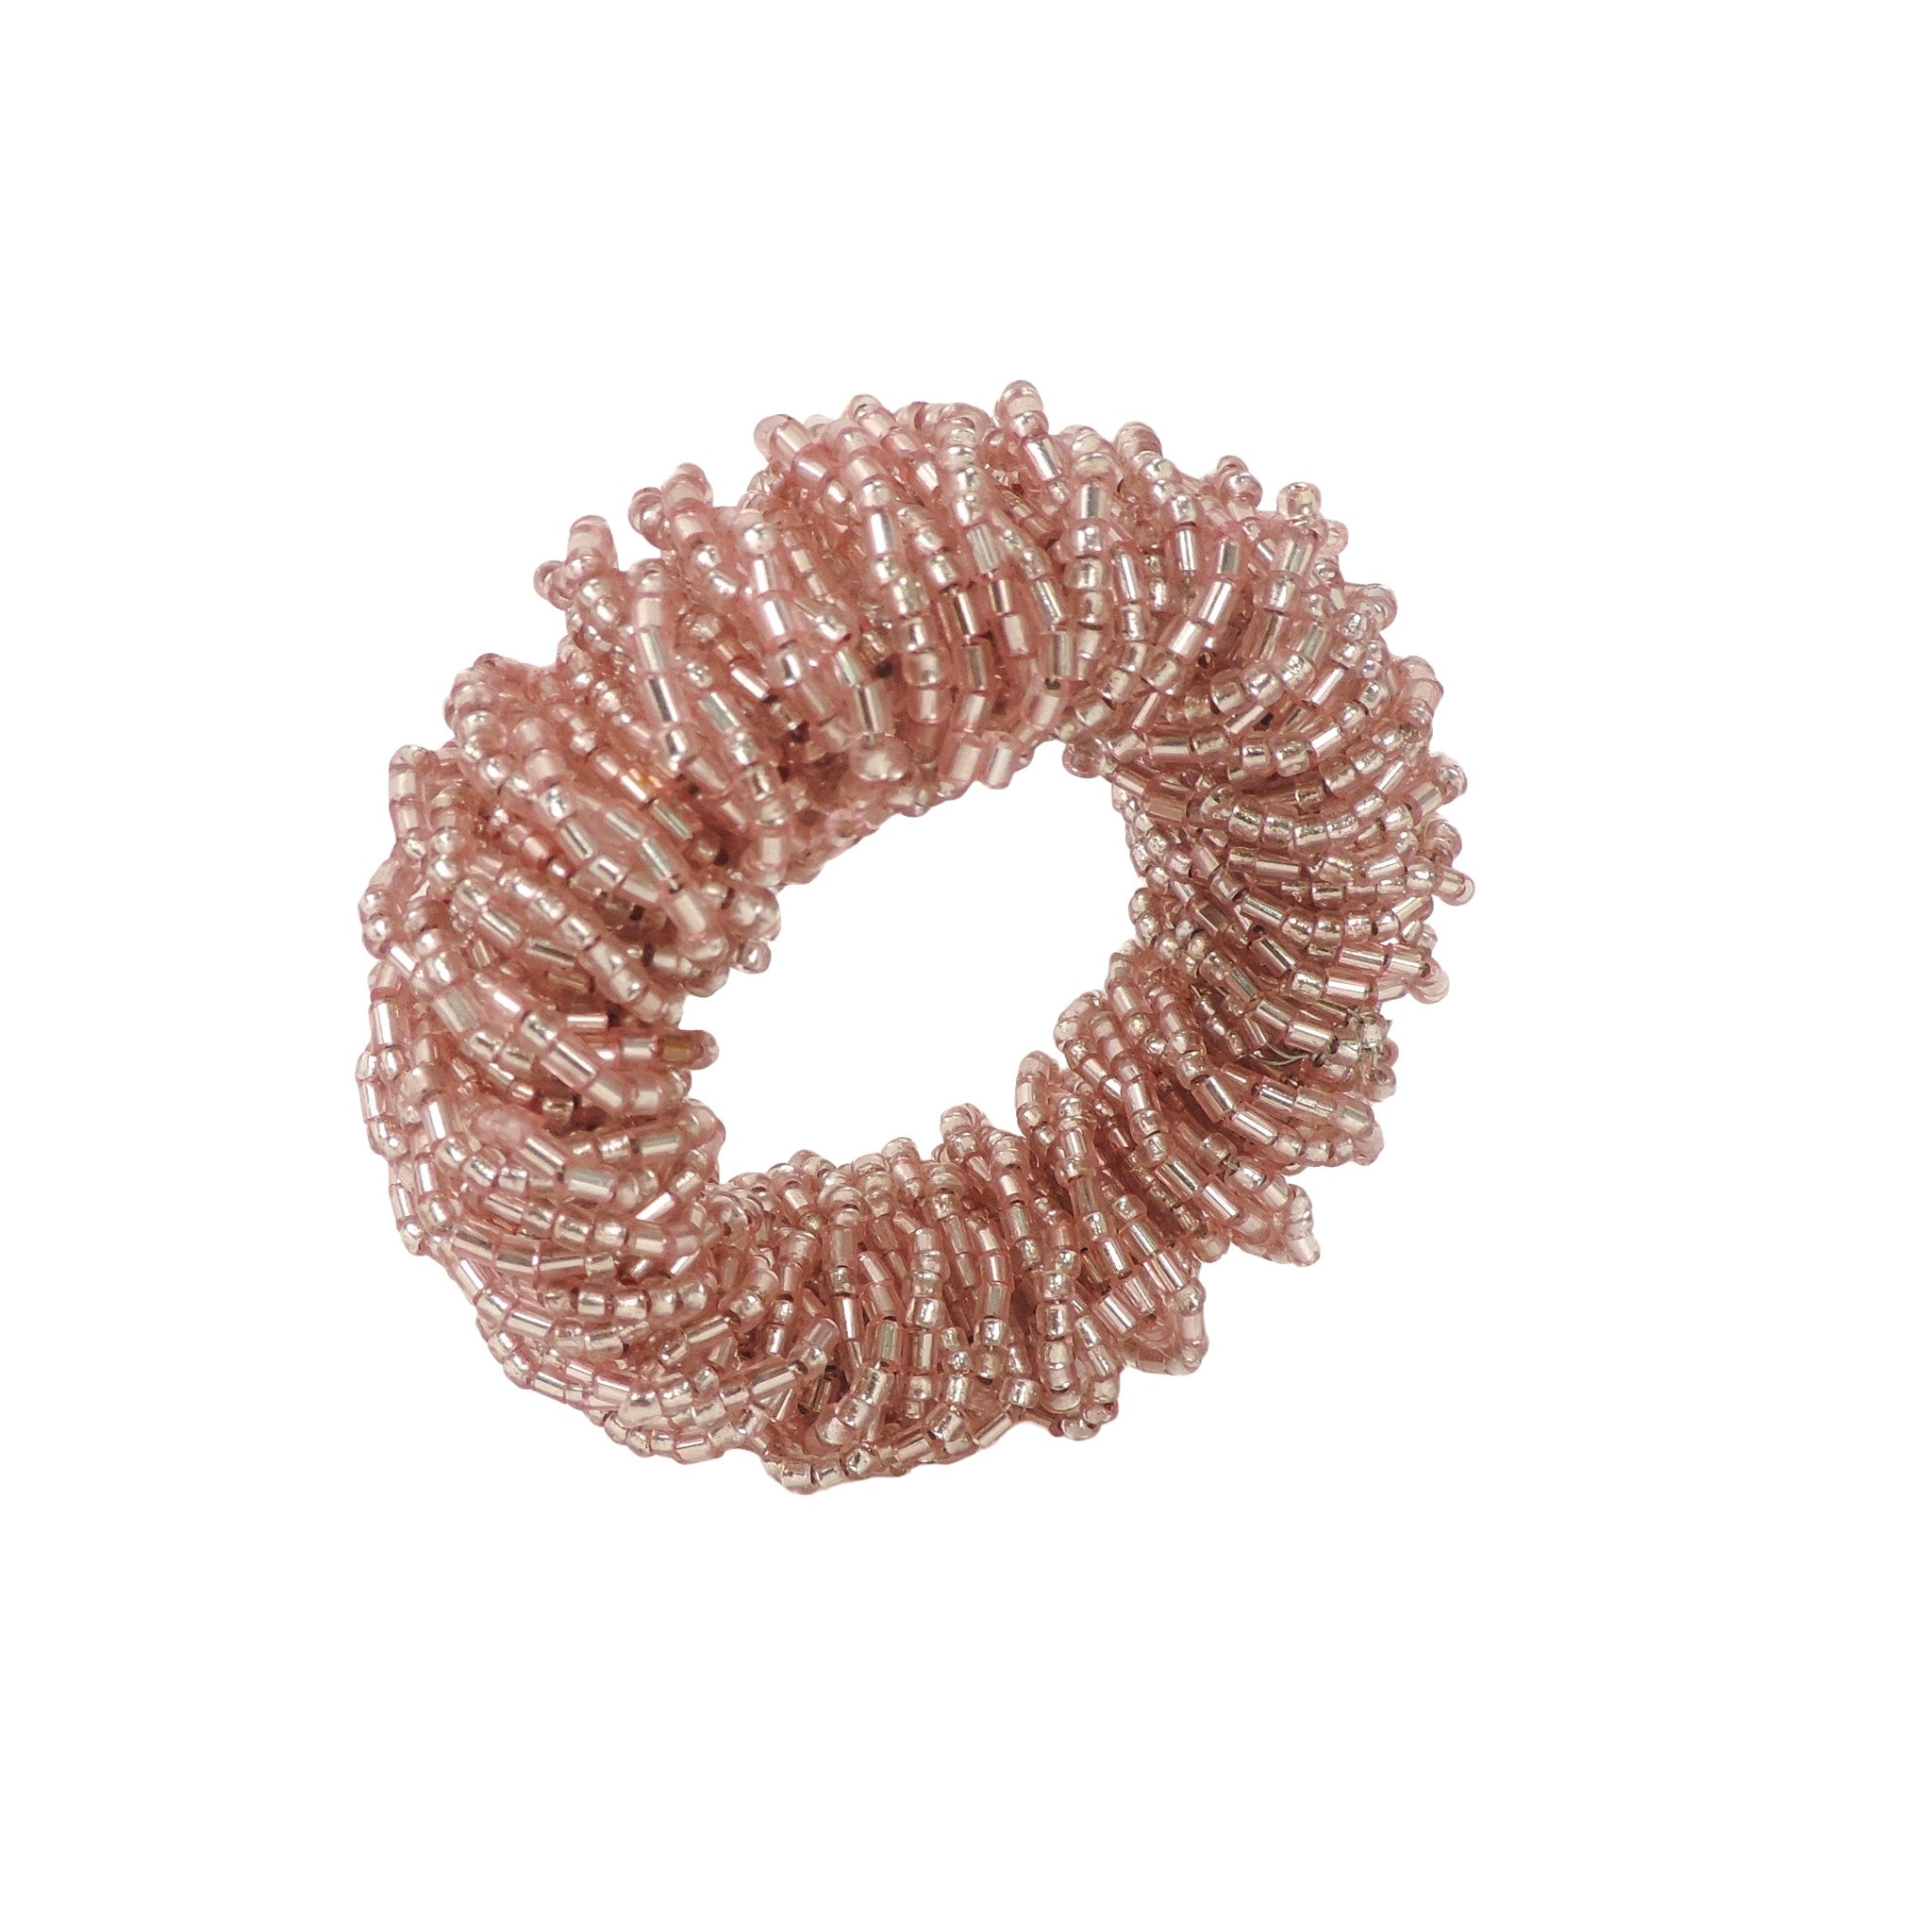 Bling-Bling Napkin Ring in Light Pink, Set of 4